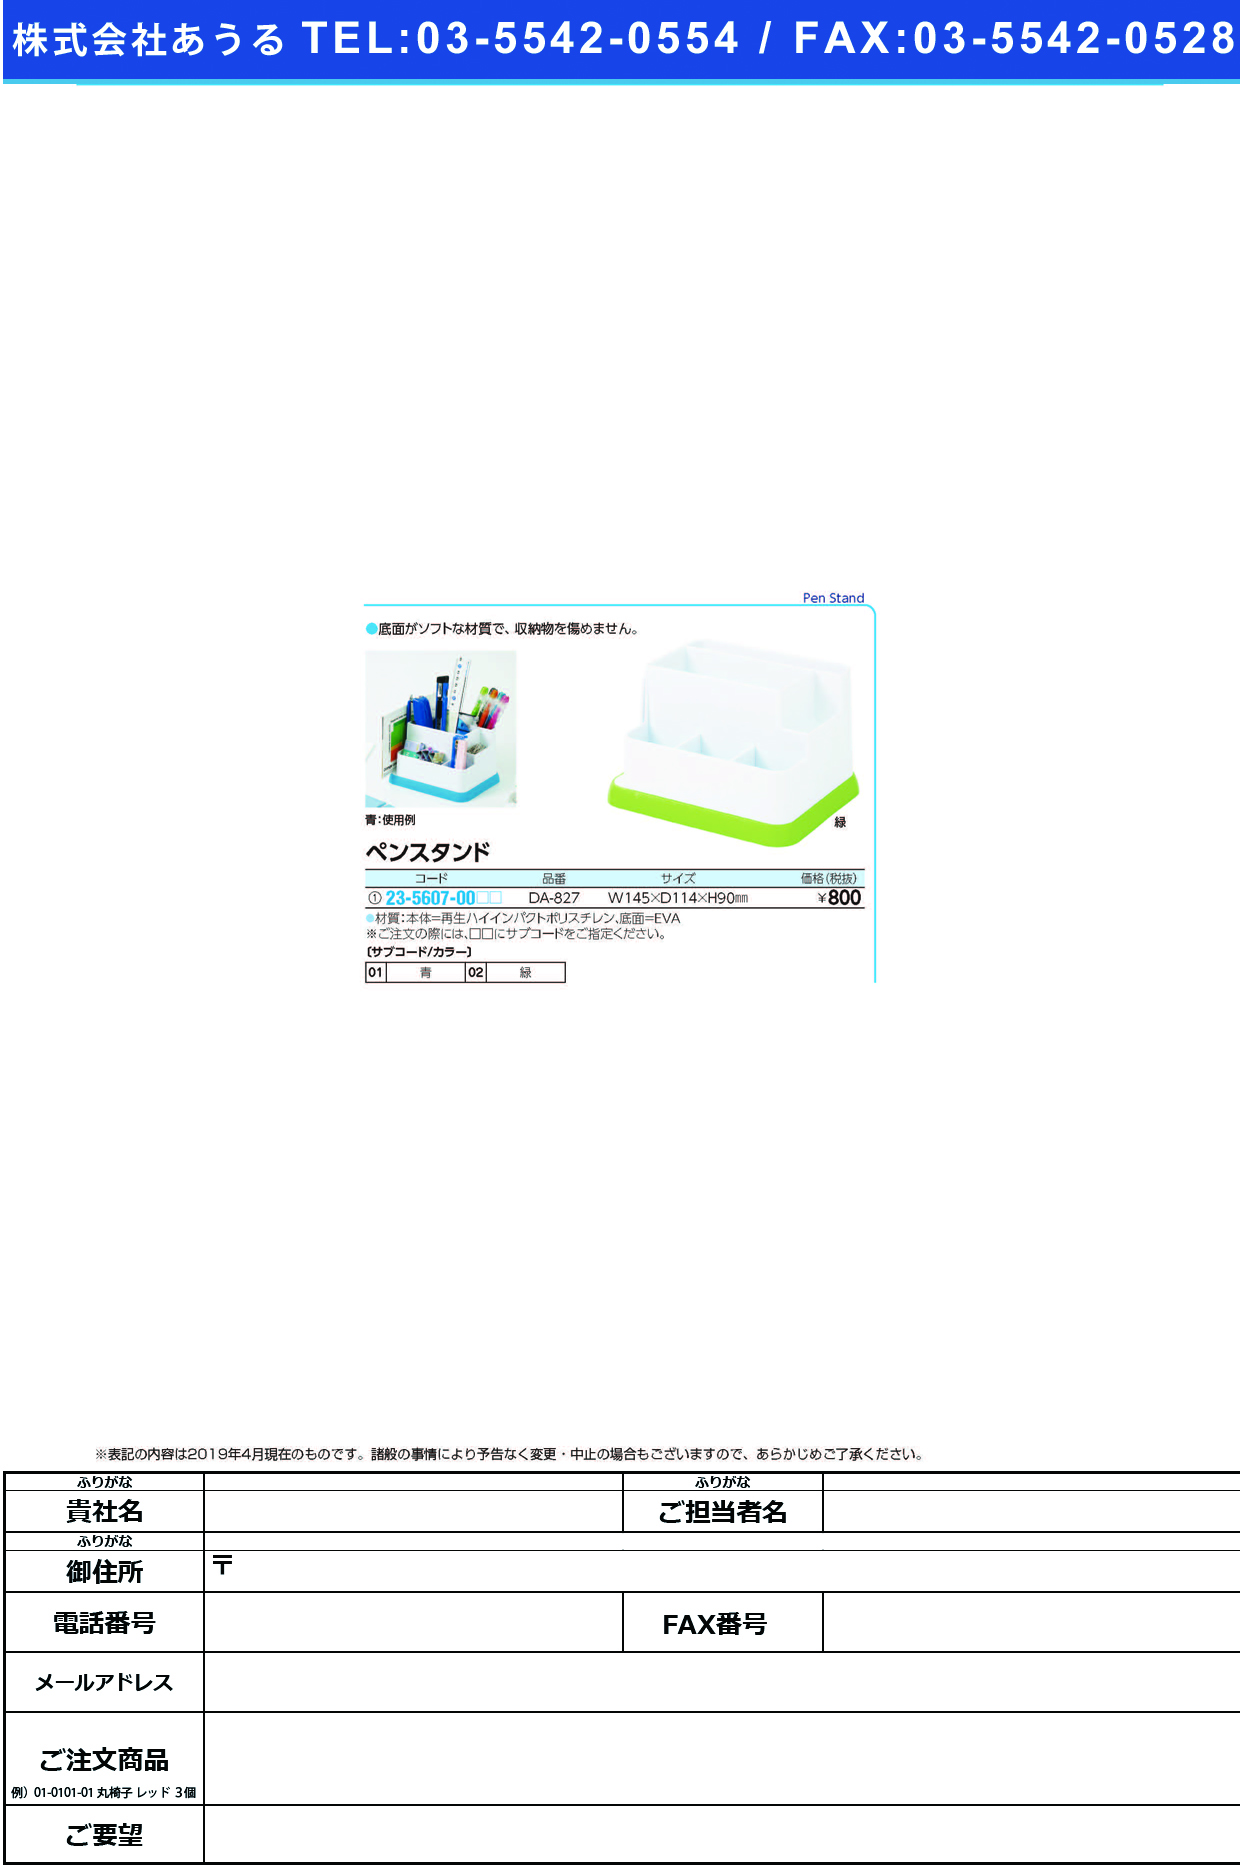 (23-5607-00)ペンスタンド DA-827 ﾍﾟﾝｽﾀﾝﾄﾞ 緑【1個単位】【2019年カタログ商品】